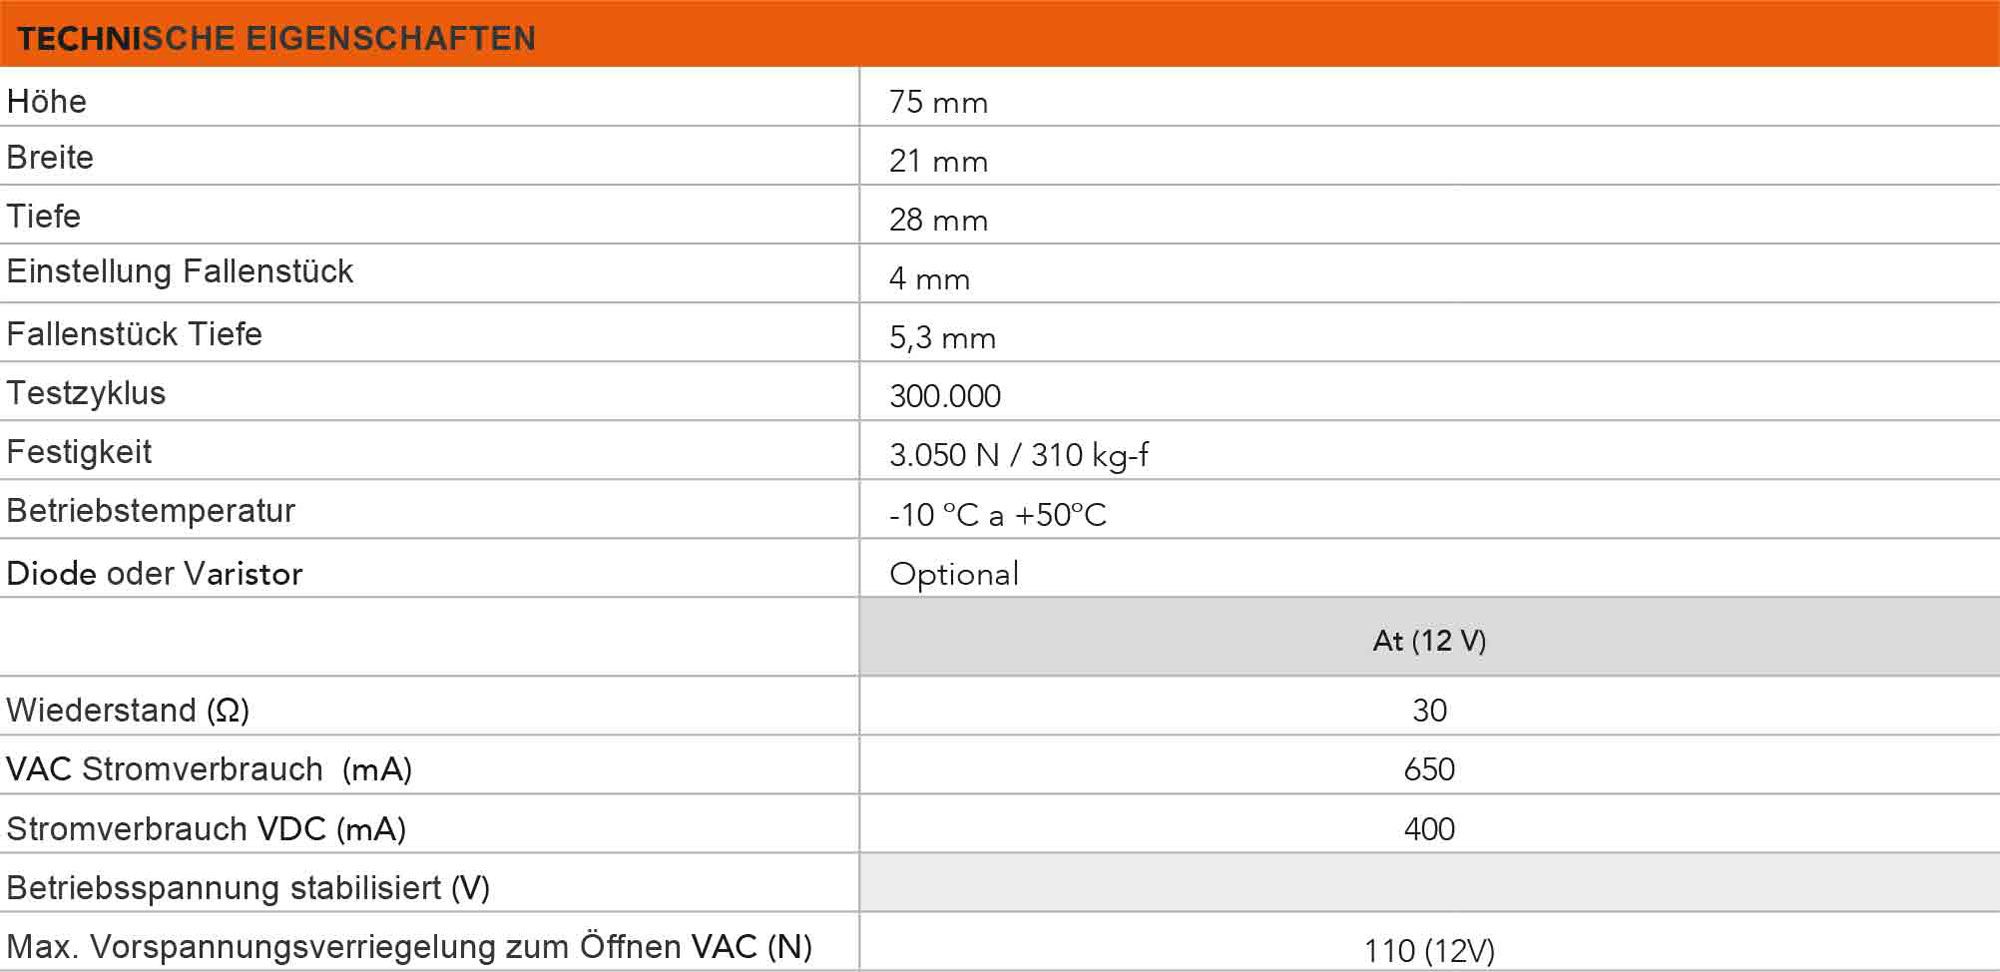 Tabelle der technischen Eigenschaften des elektrischen Türöffners der Serie 56